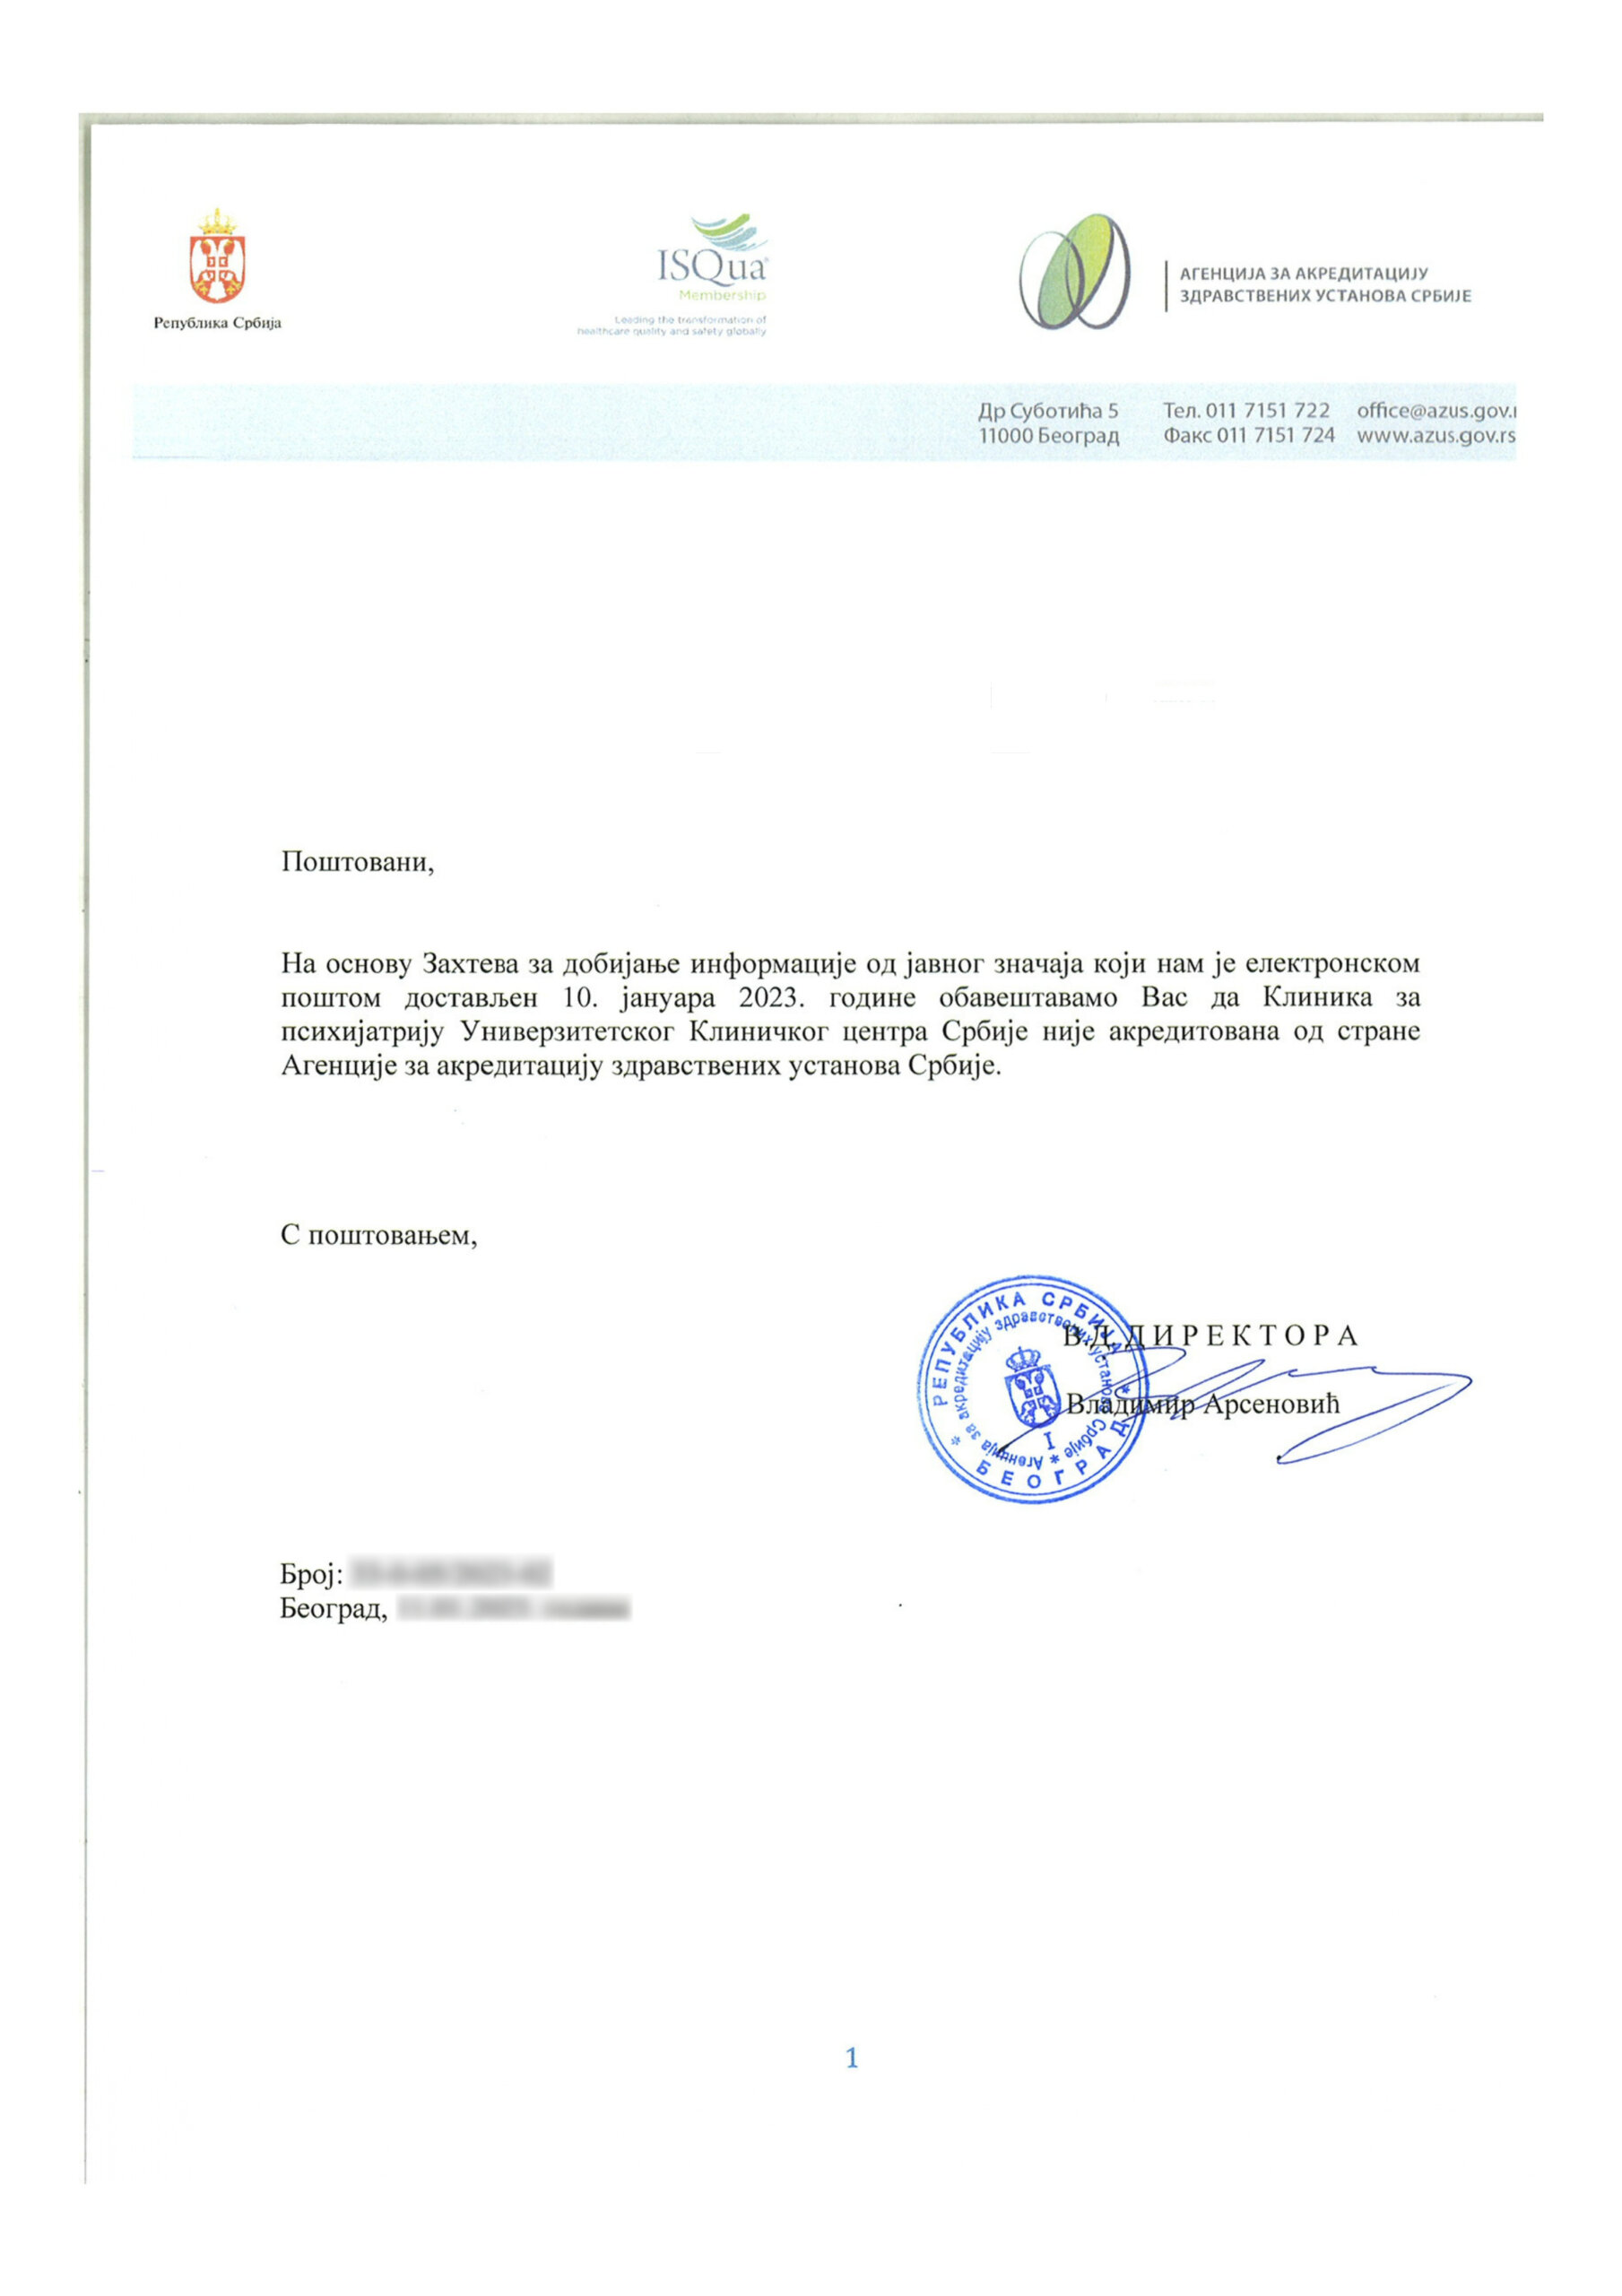 Danas saznaje: Zašto Klinika za psihijatriju UKC Srbije još nema akreditaciju za zdravstvene ustanove? 2